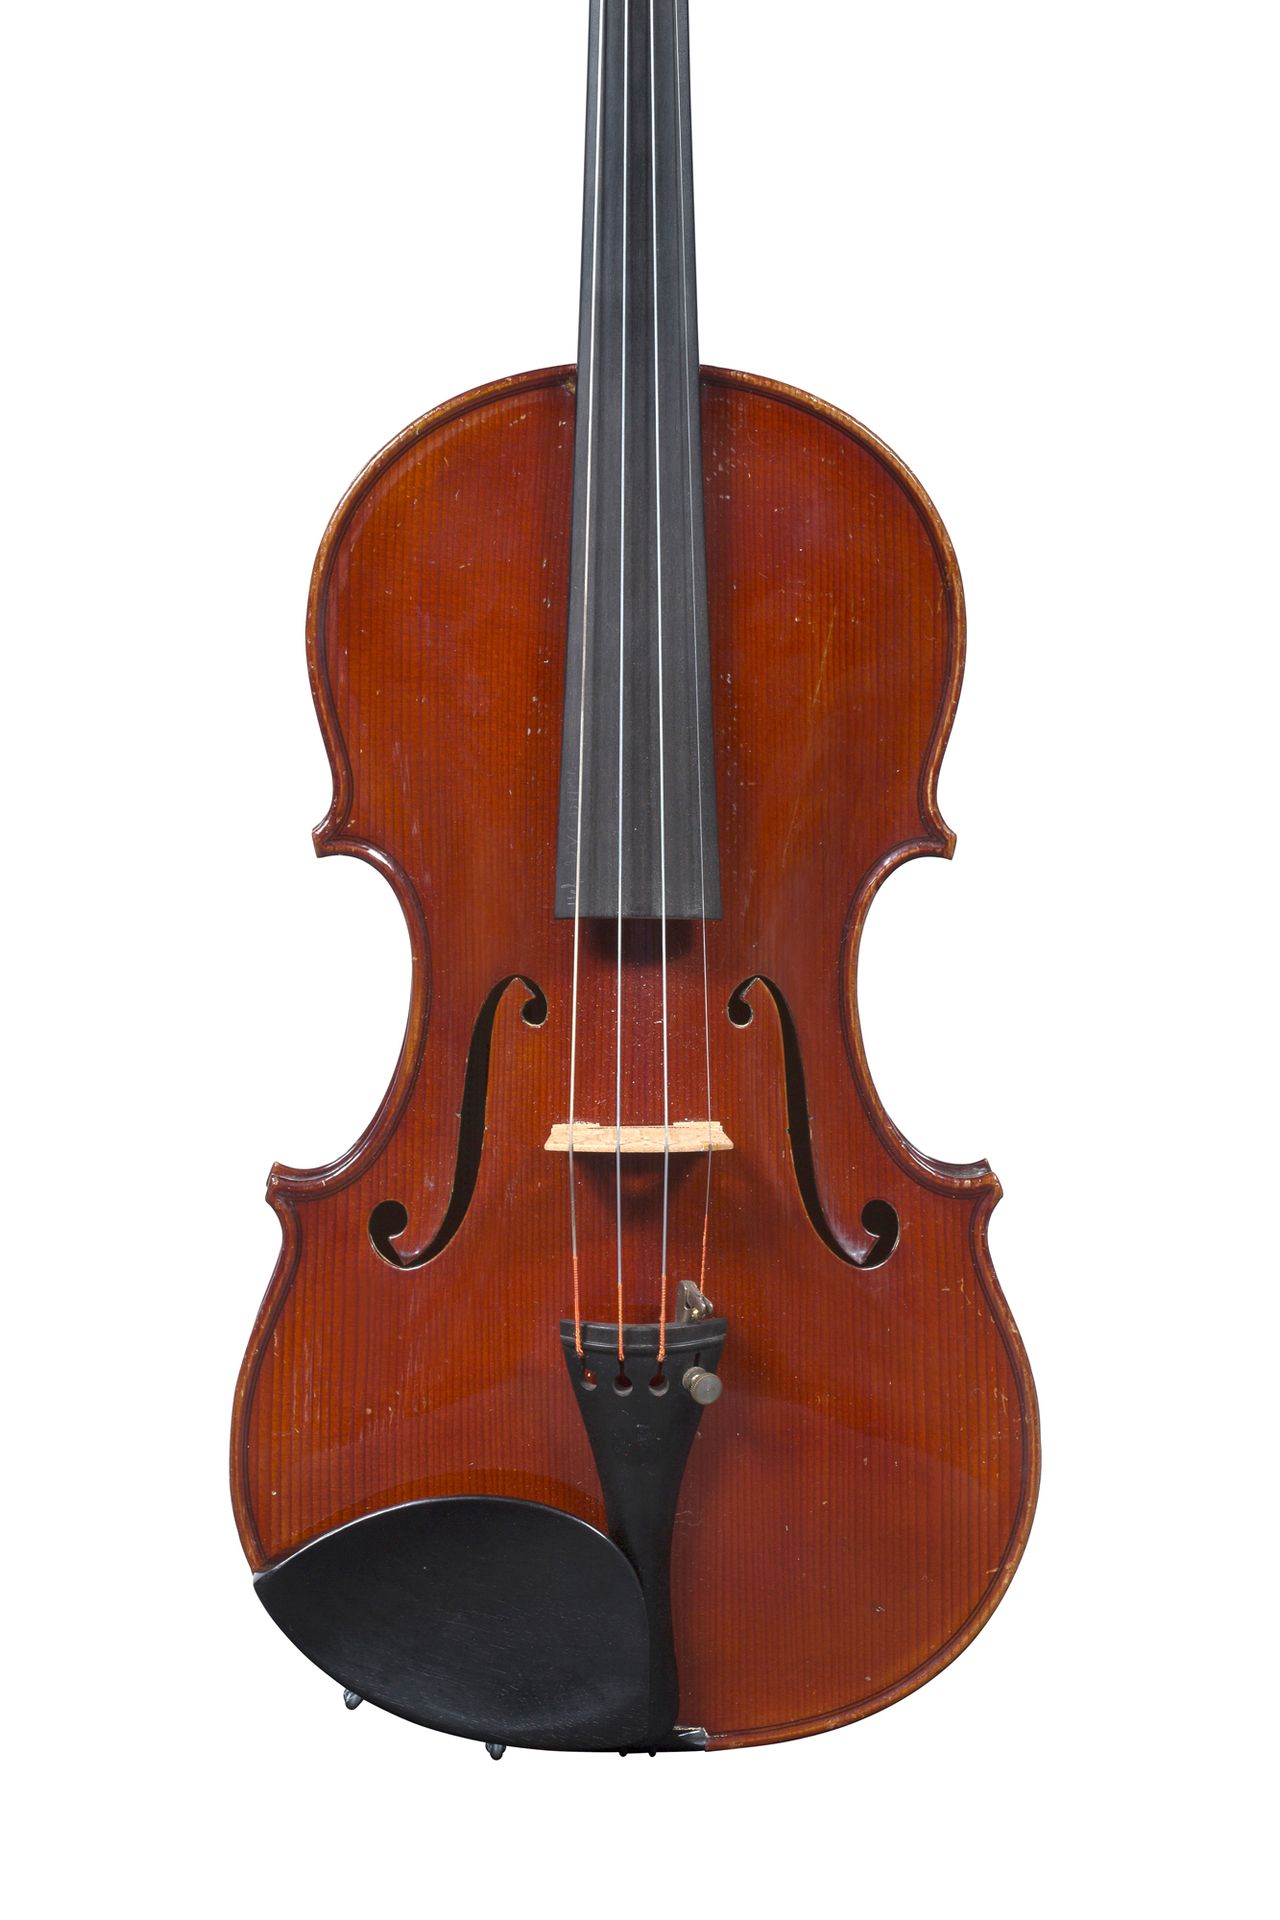 Null Geige von Charles Claudot
Hergestellt in Mirecourt um 1920-30 bei Amédée Di&hellip;